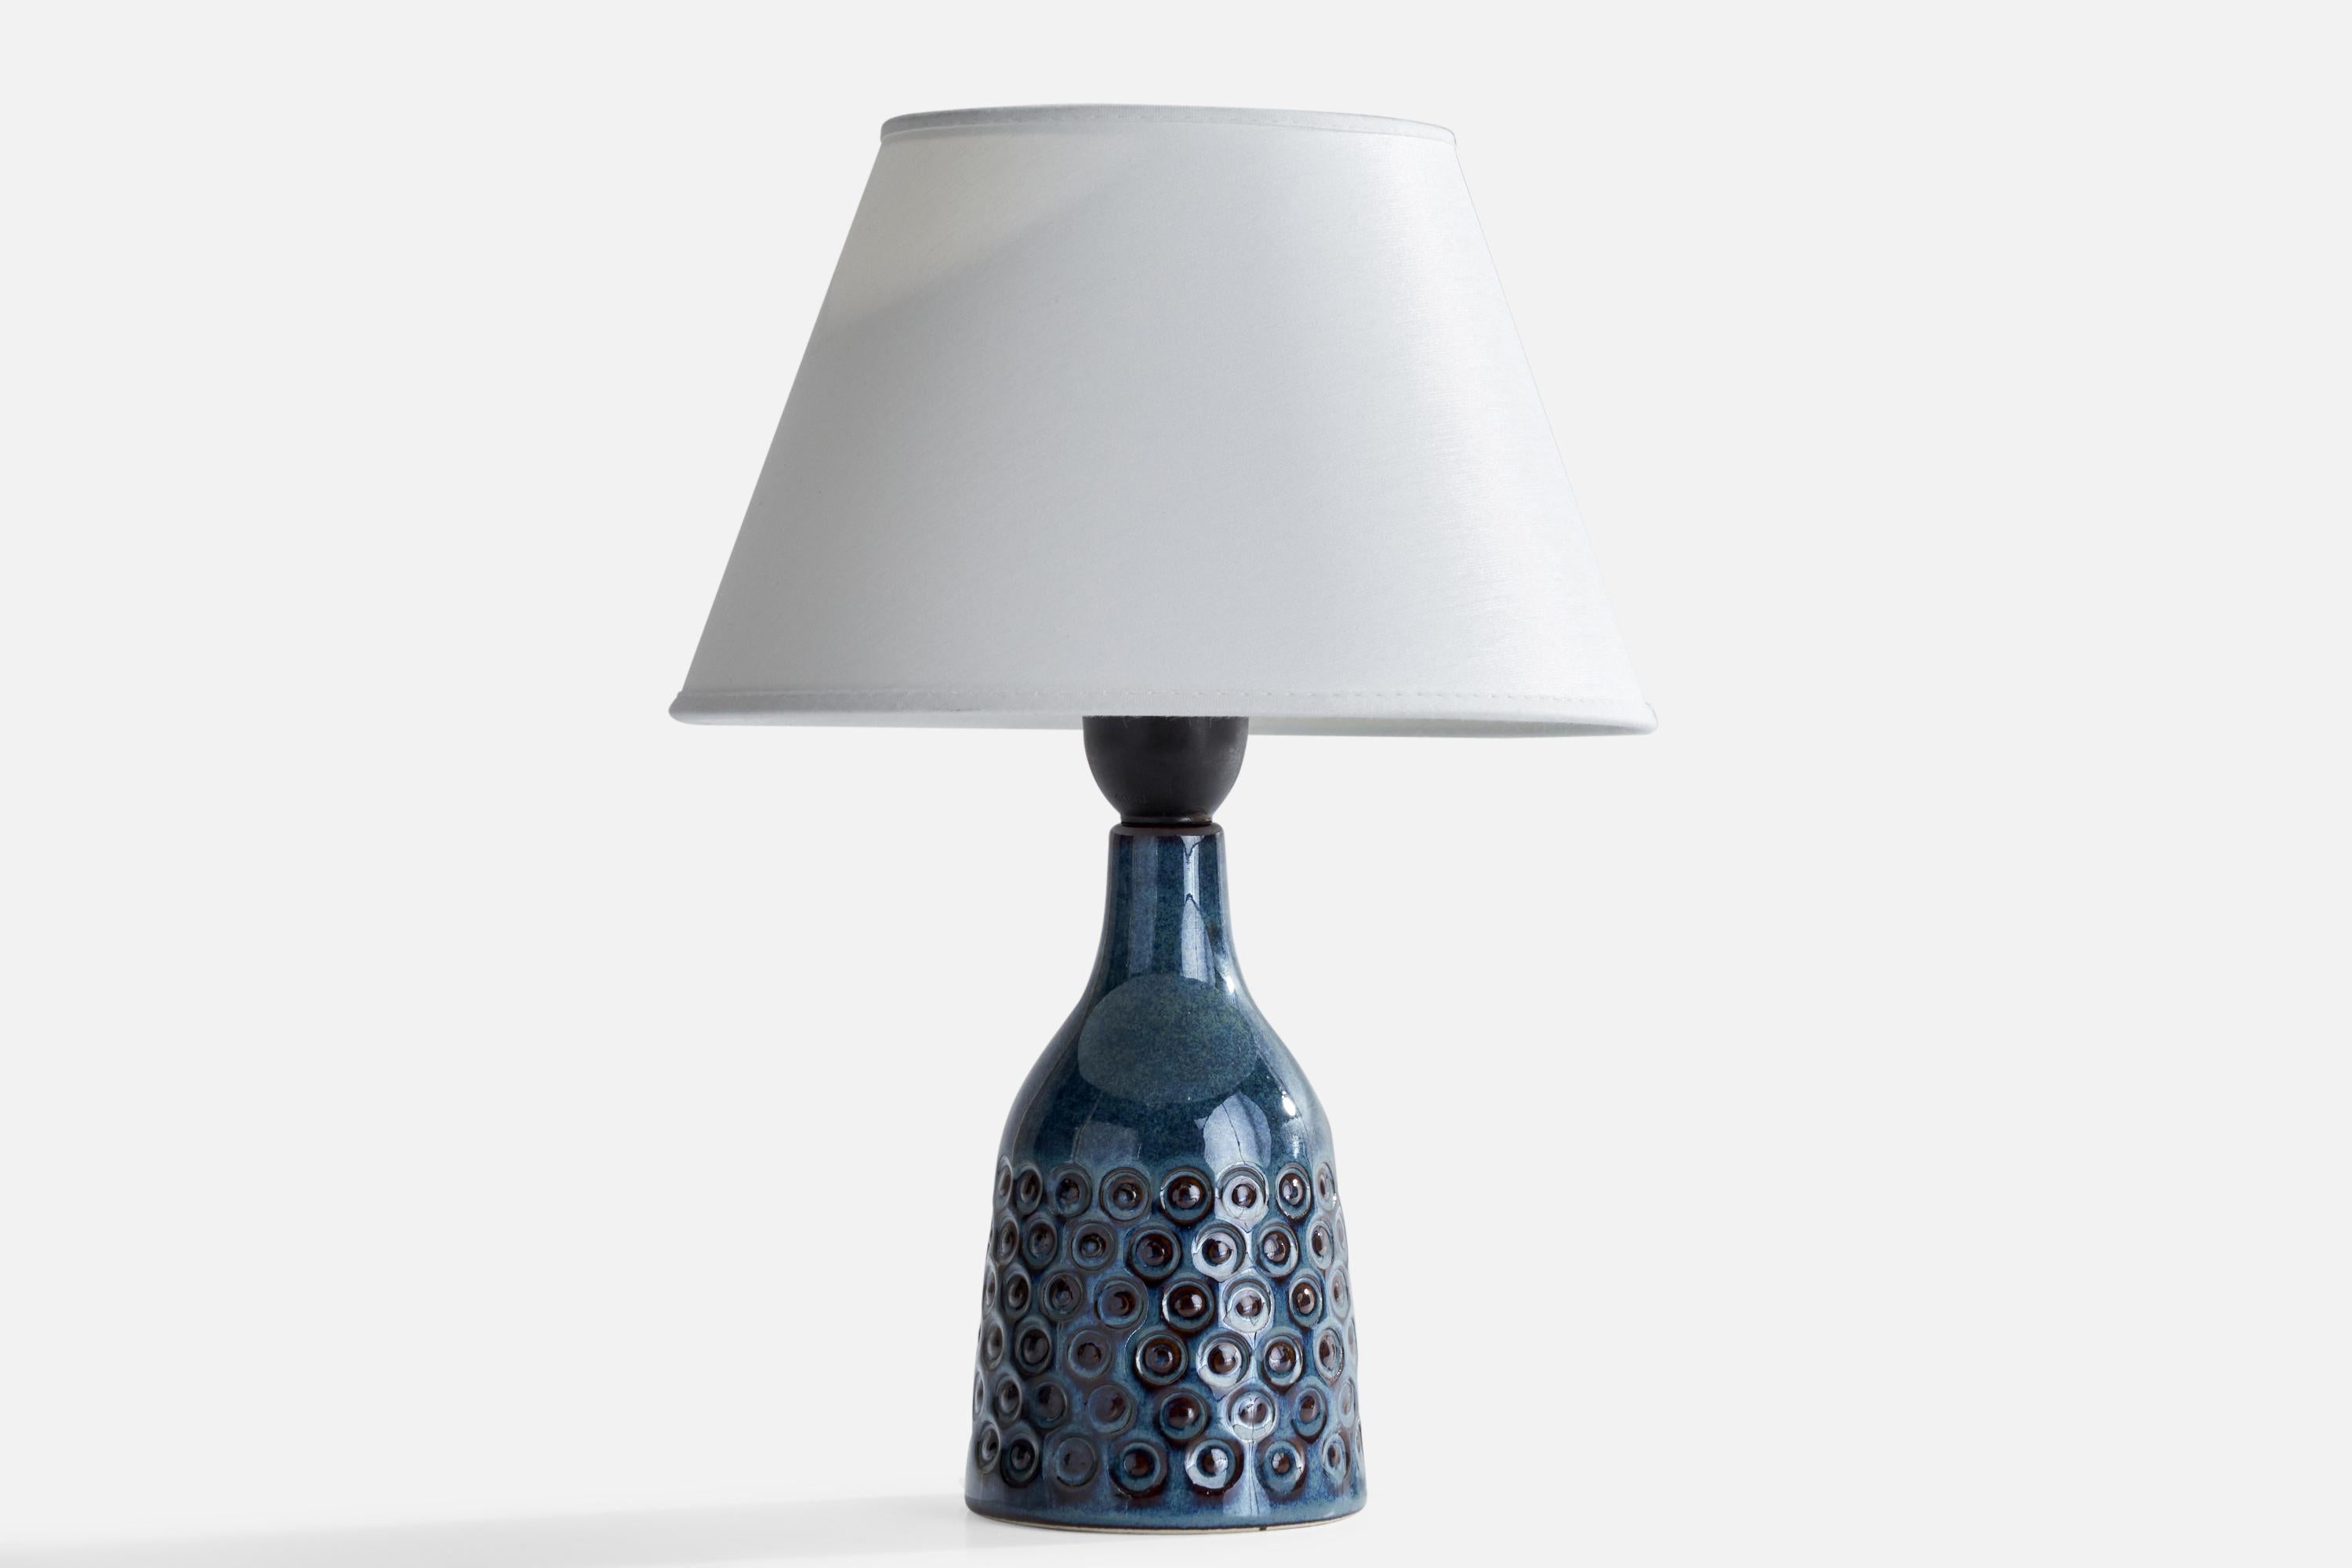 Tischlampe aus blau glasiertem Steingut, entworfen und hergestellt von Søholm, Bornholm, Dänemark, um 1960.

Abmessungen der Lampe (Zoll): 8,25